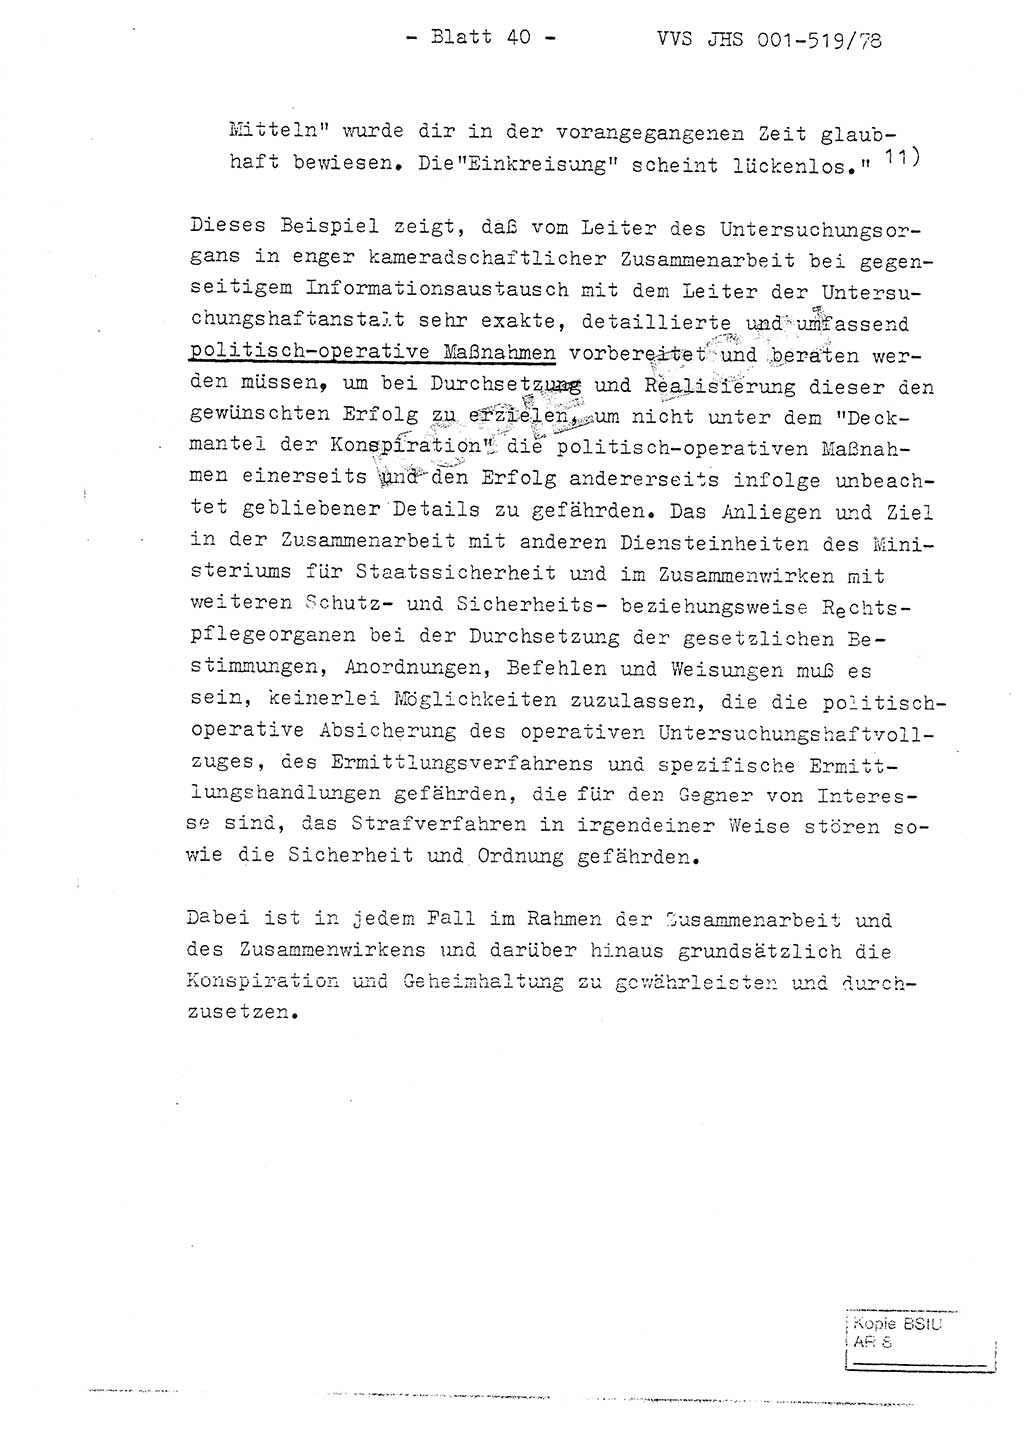 Fachschulabschlußarbeit Hauptmann Alfons Lützelberger (Abt. ⅩⅣ), Ministerium für Staatssicherheit (MfS) [Deutsche Demokratische Republik (DDR)], Juristische Hochschule (JHS), Vertrauliche Verschlußsache (VVS) 001-519/78, Potsdam 1978, Blatt 40 (FS-Abschl.-Arb. MfS DDR JHS VVS 001-519/78 1978, Bl. 40)